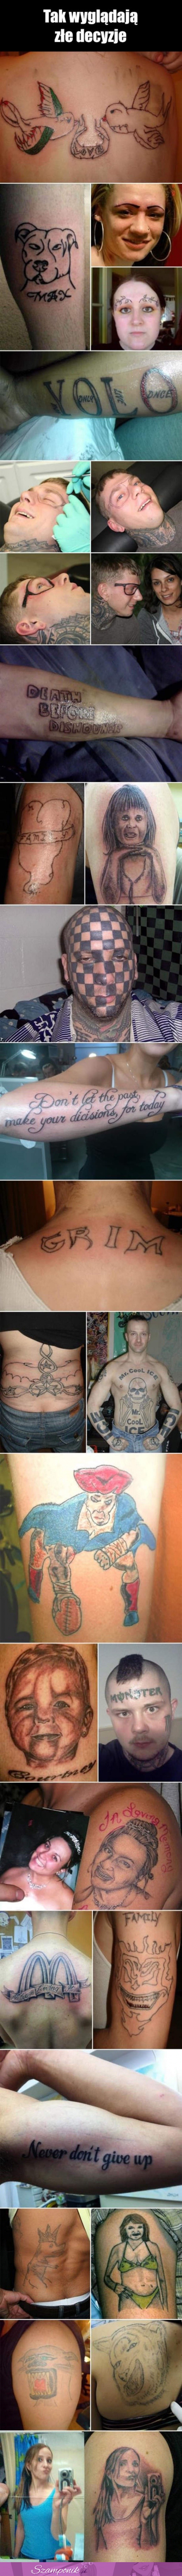 Zobacz największe pomyłki tatuaży, co oni ze sobą zrobili...